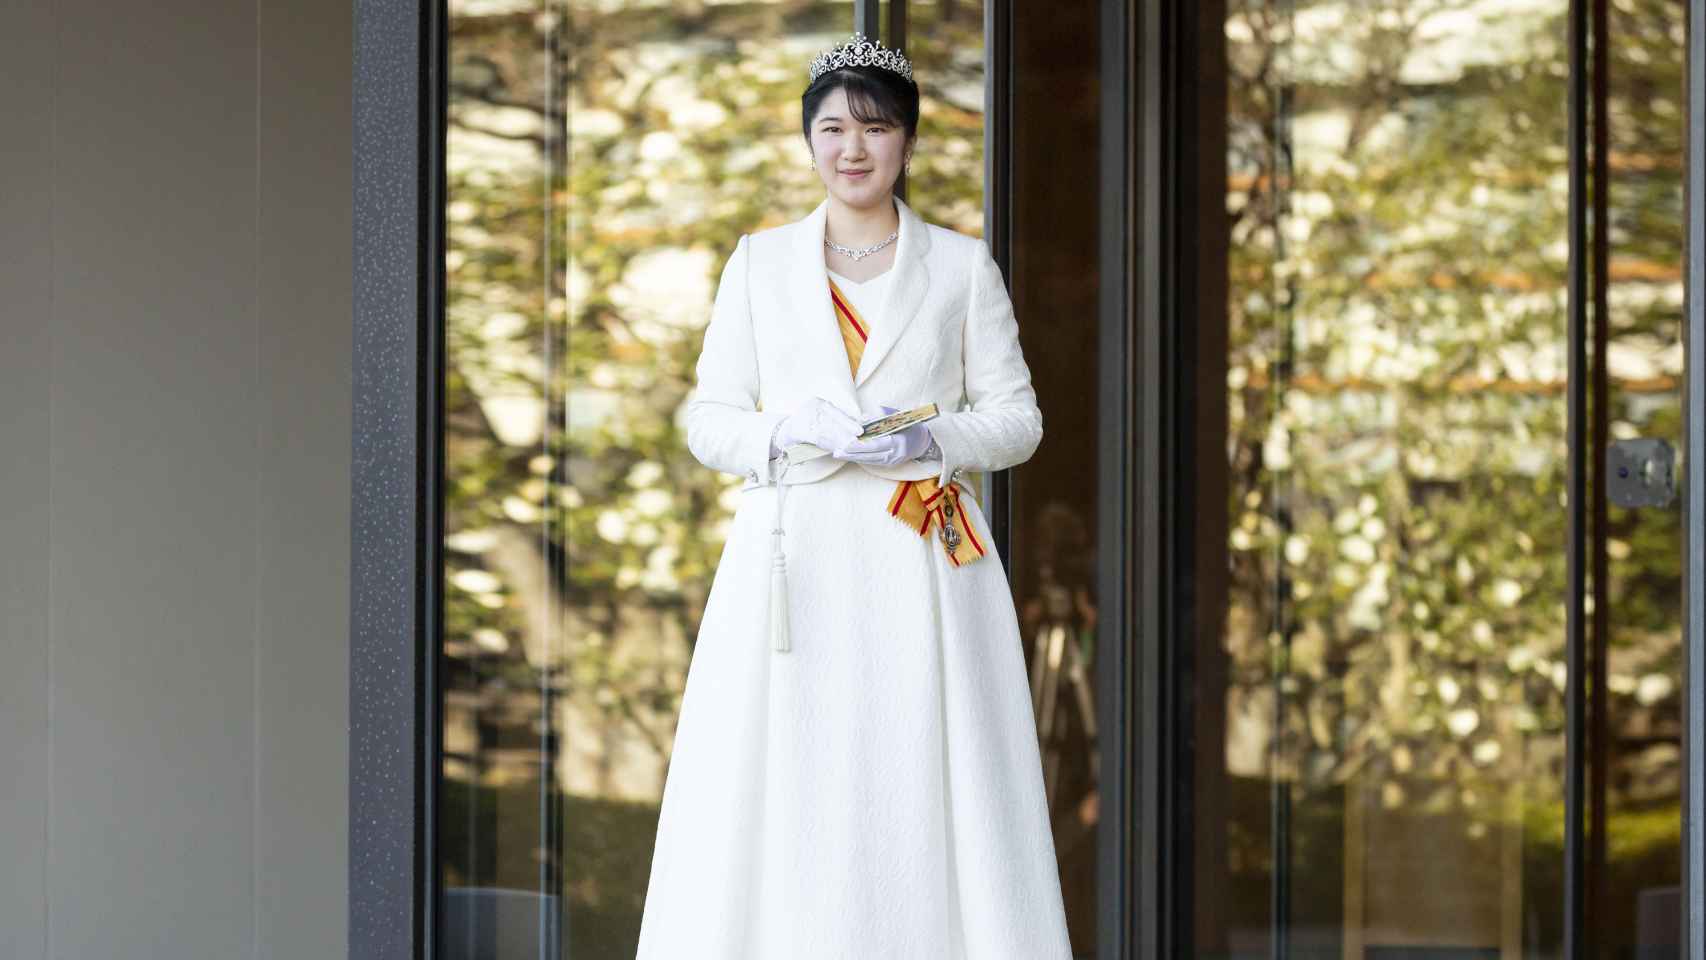 Aiko ha lucido un vestido largo color crema que ha completado con una tiara prestada.